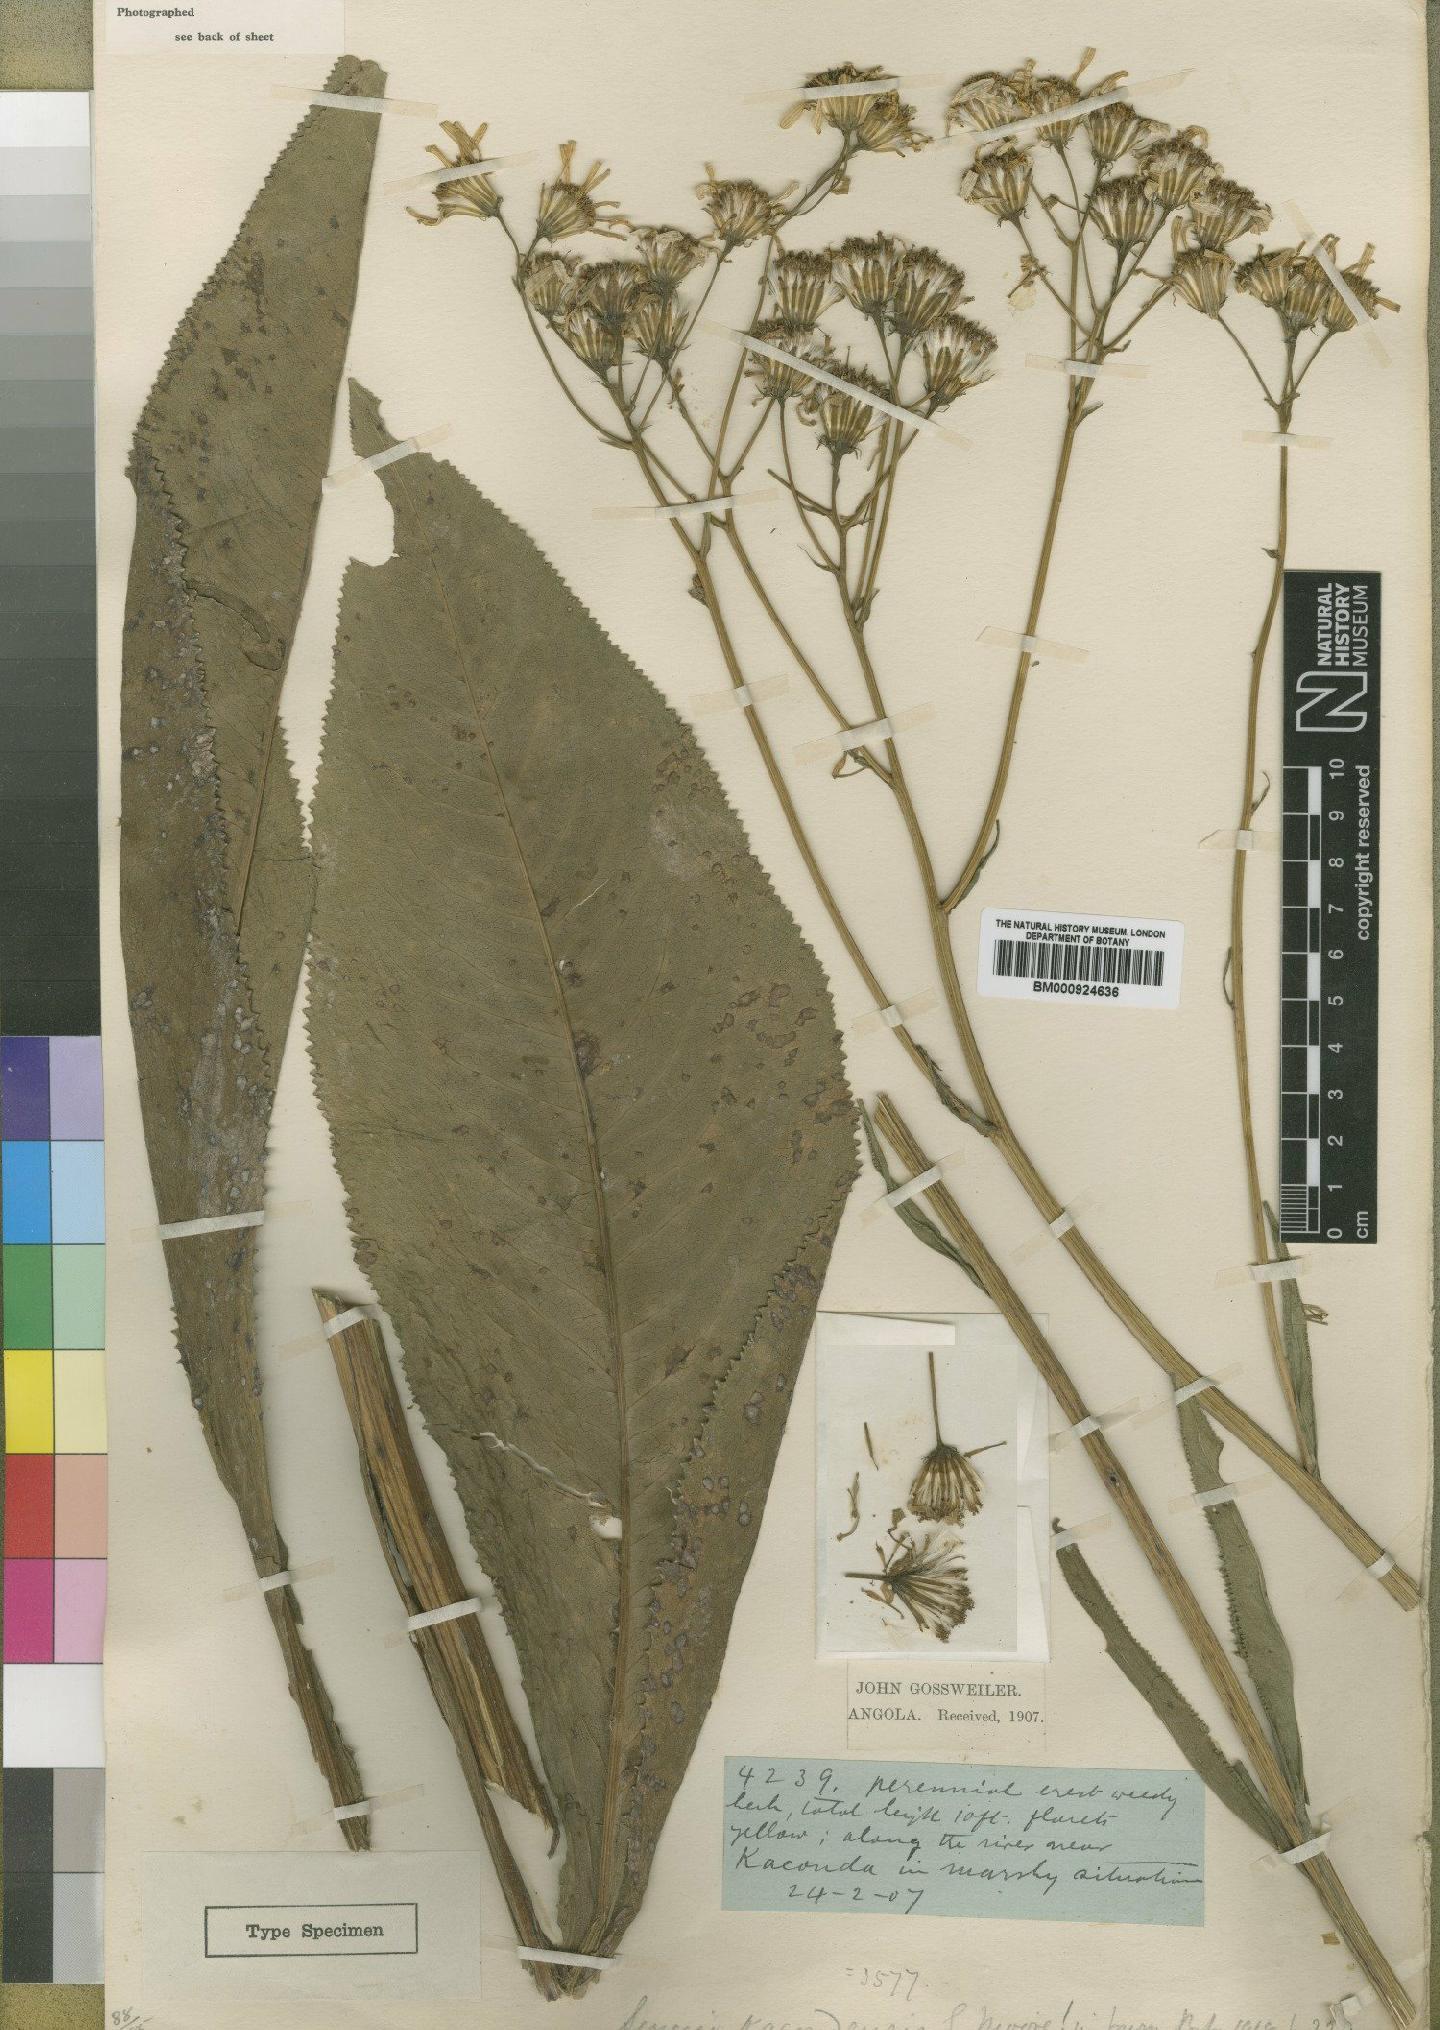 To NHMUK collection (Senecio kacondensis Moore; Type; NHMUK:ecatalogue:4529647)